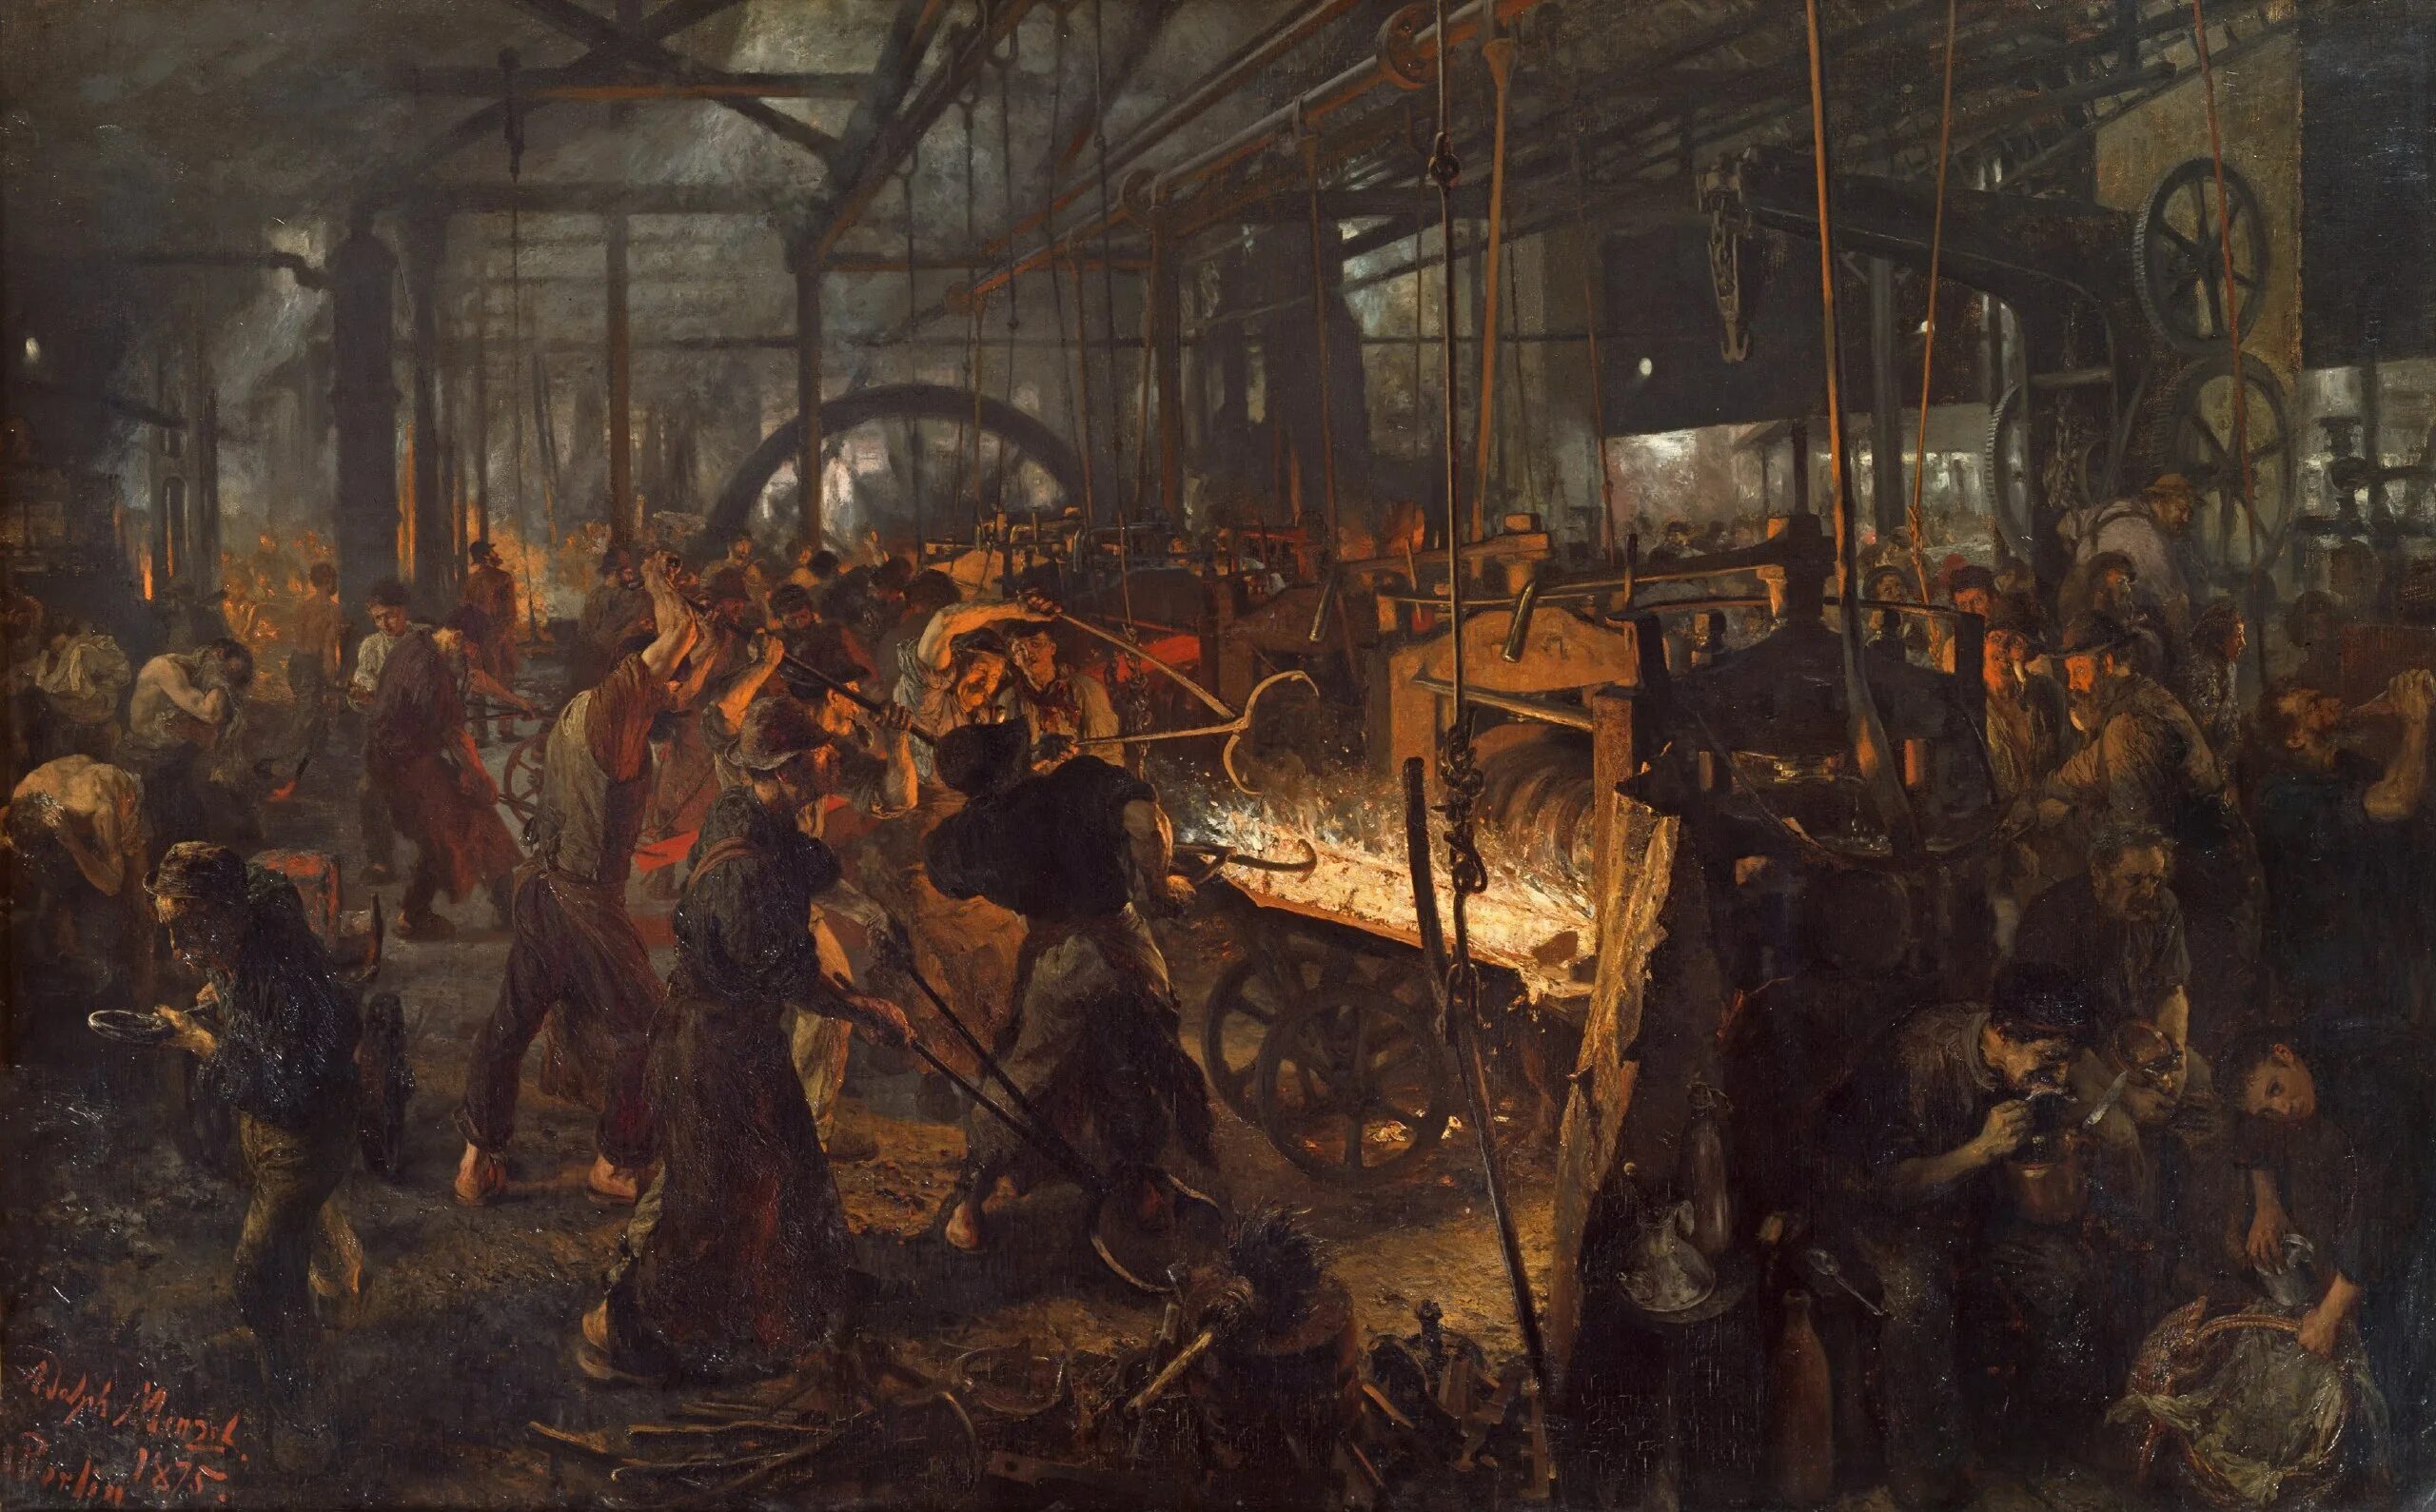 Картина Адольфа фон Менцеля "Железопрокатный завод". Industrial century